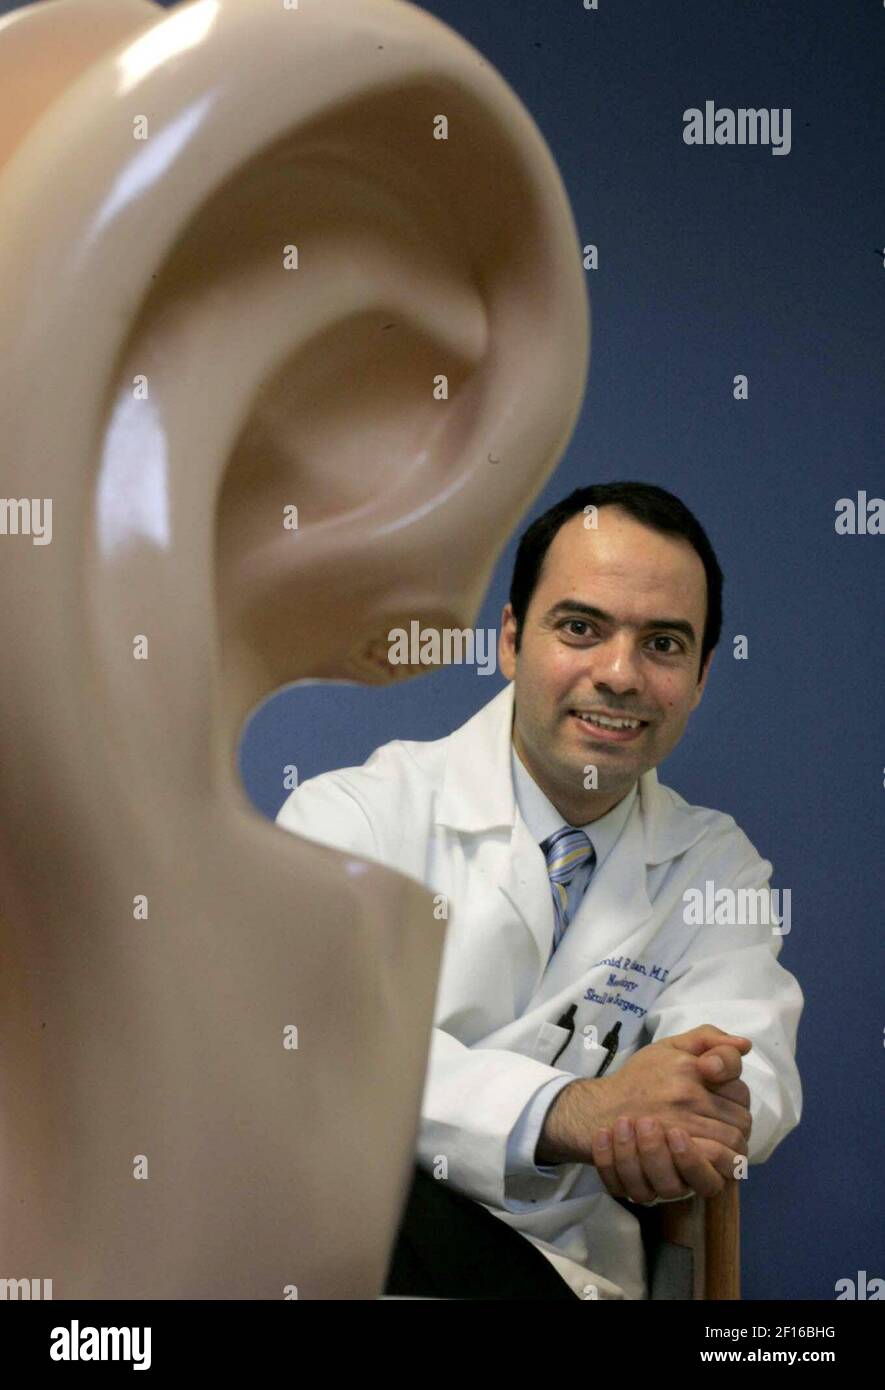 Il dottor Hamid Djalilian, esperto di udito presso l'Università della California Irvine Medical Center, è preoccupato per gli effetti dei lettori MP3 sull'udito degli adolescenti. (Foto di Ana Venegas/Orange County Register/MCT/Sipa USA) Foto Stock